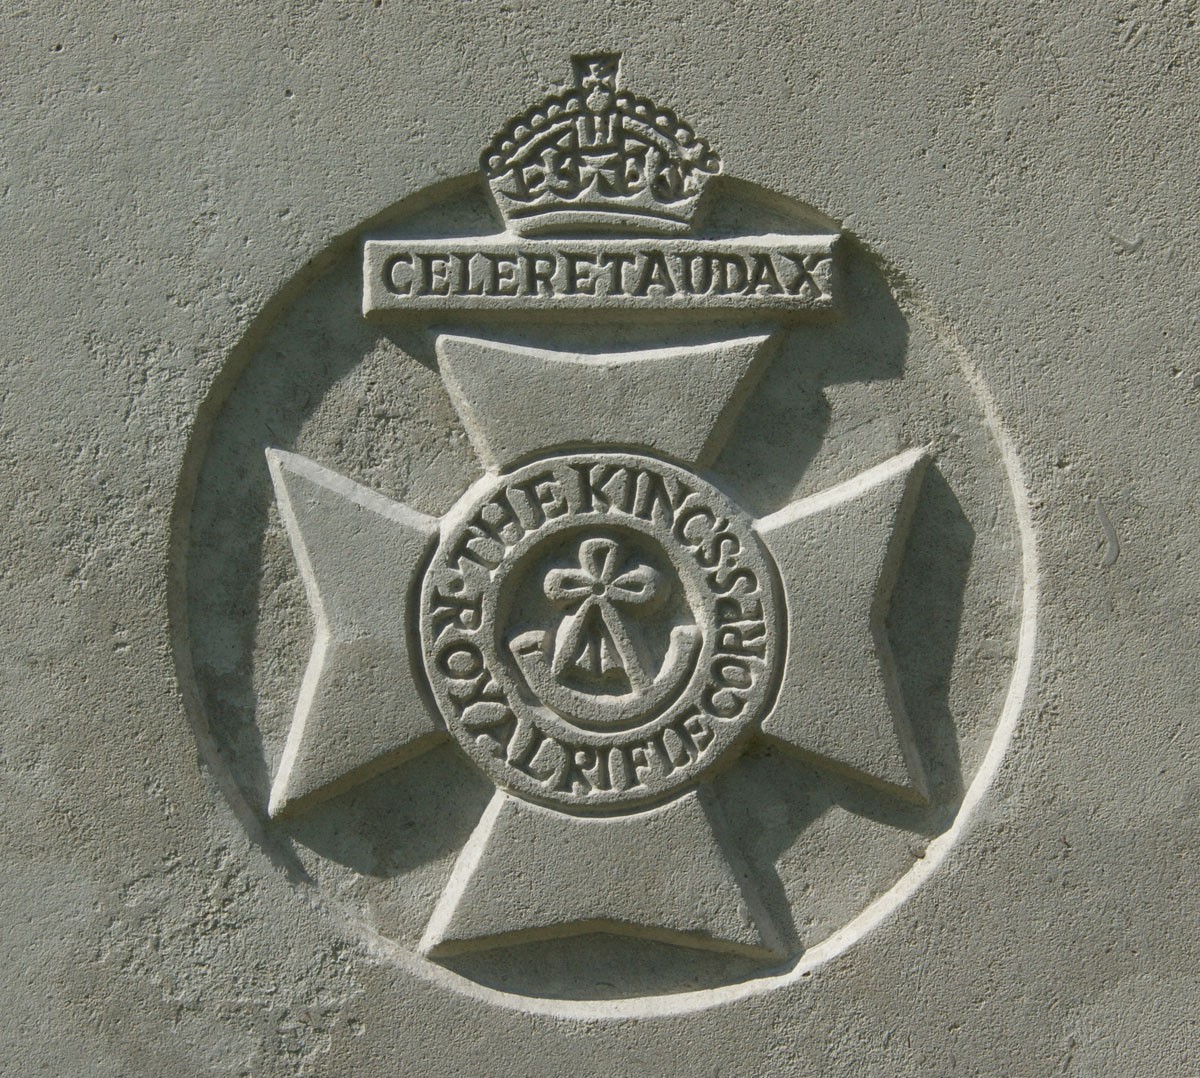 Kings Royal Rifle Corps badge